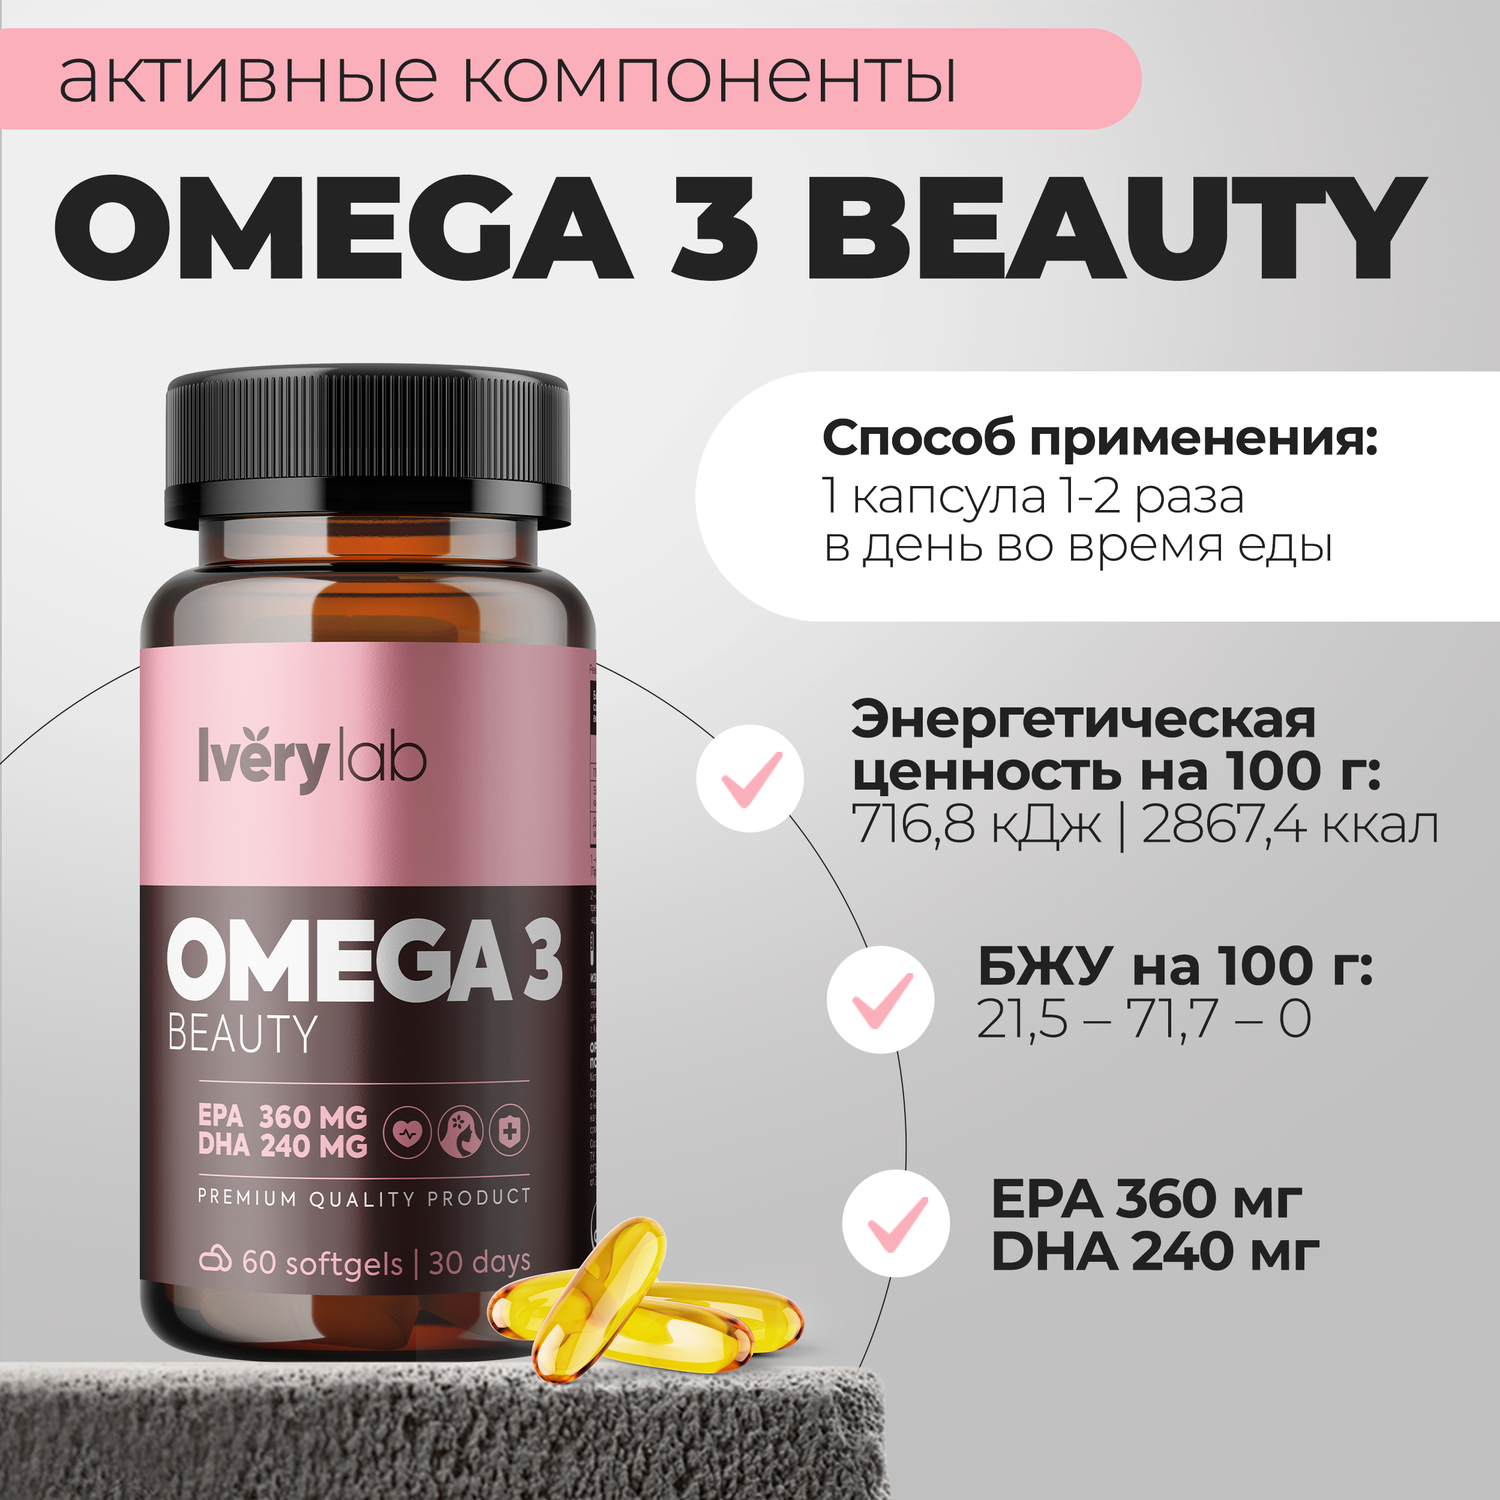 БАД Iverylab Комплекс Омега-3 жирных кислот Omega 3 Beauty 60 капсул - фото 4